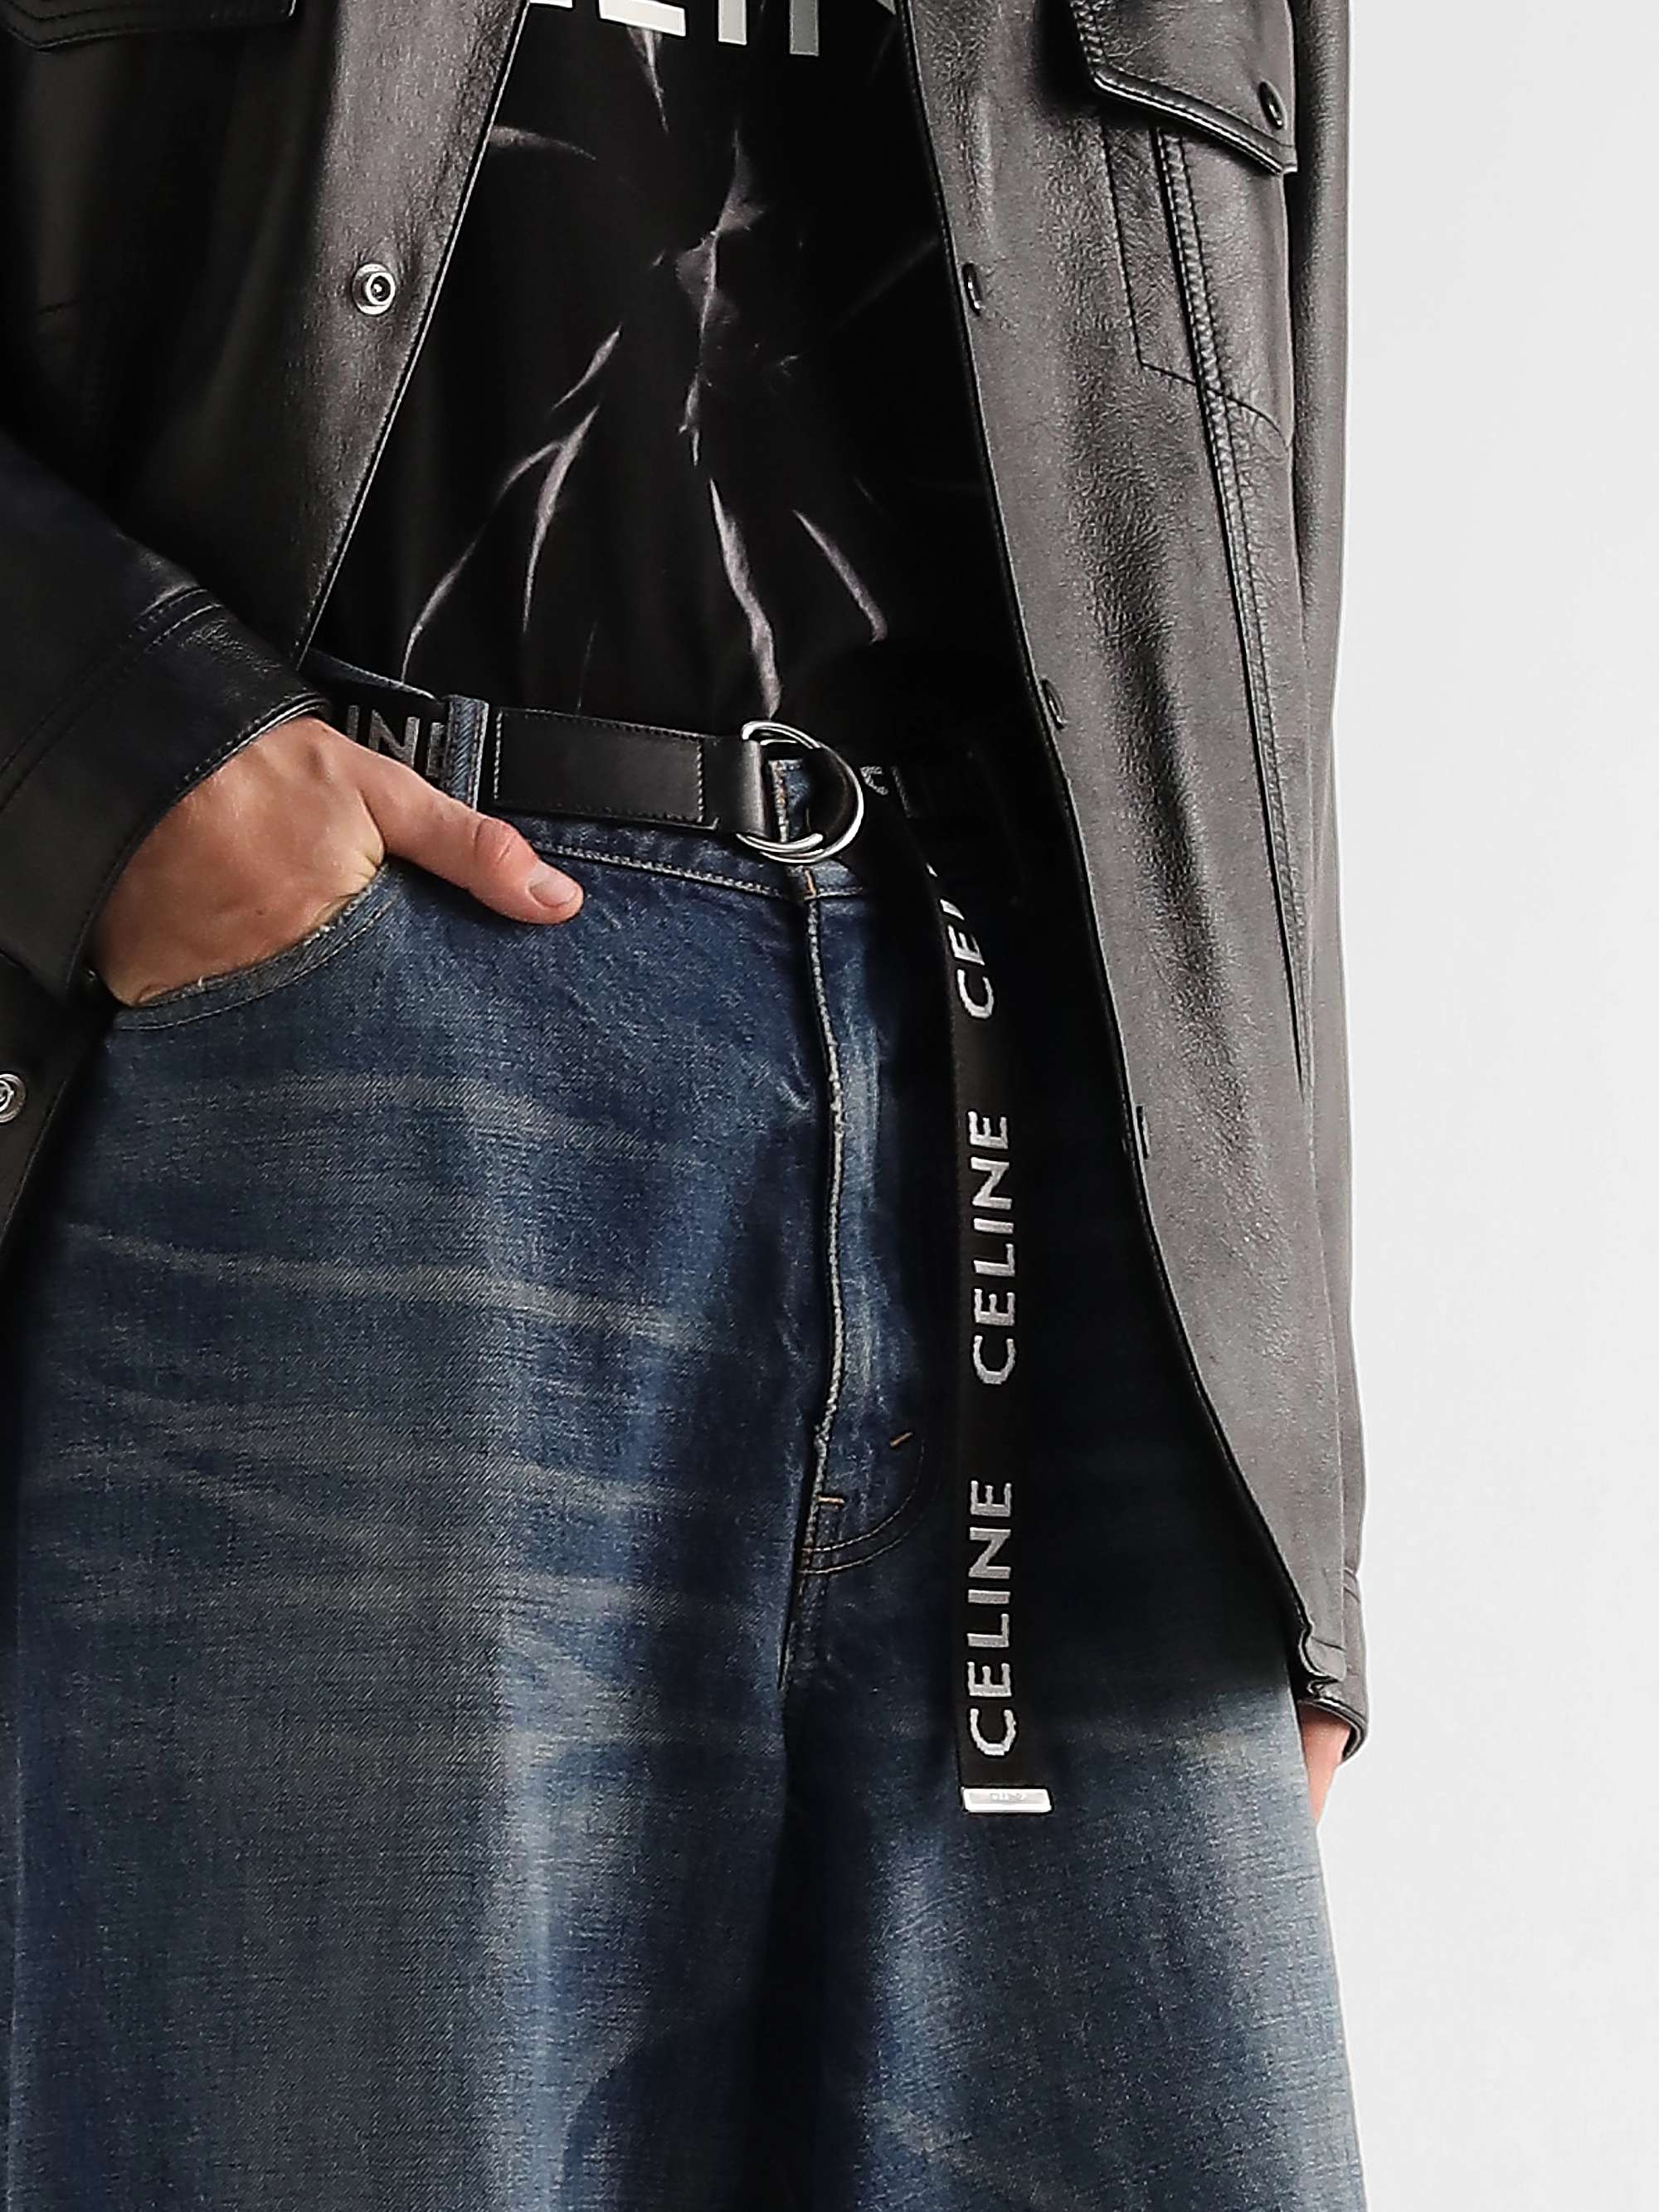 CELINE HOMME 3cm Leather-Trimmed Logo-Jacquard Canvas Belt